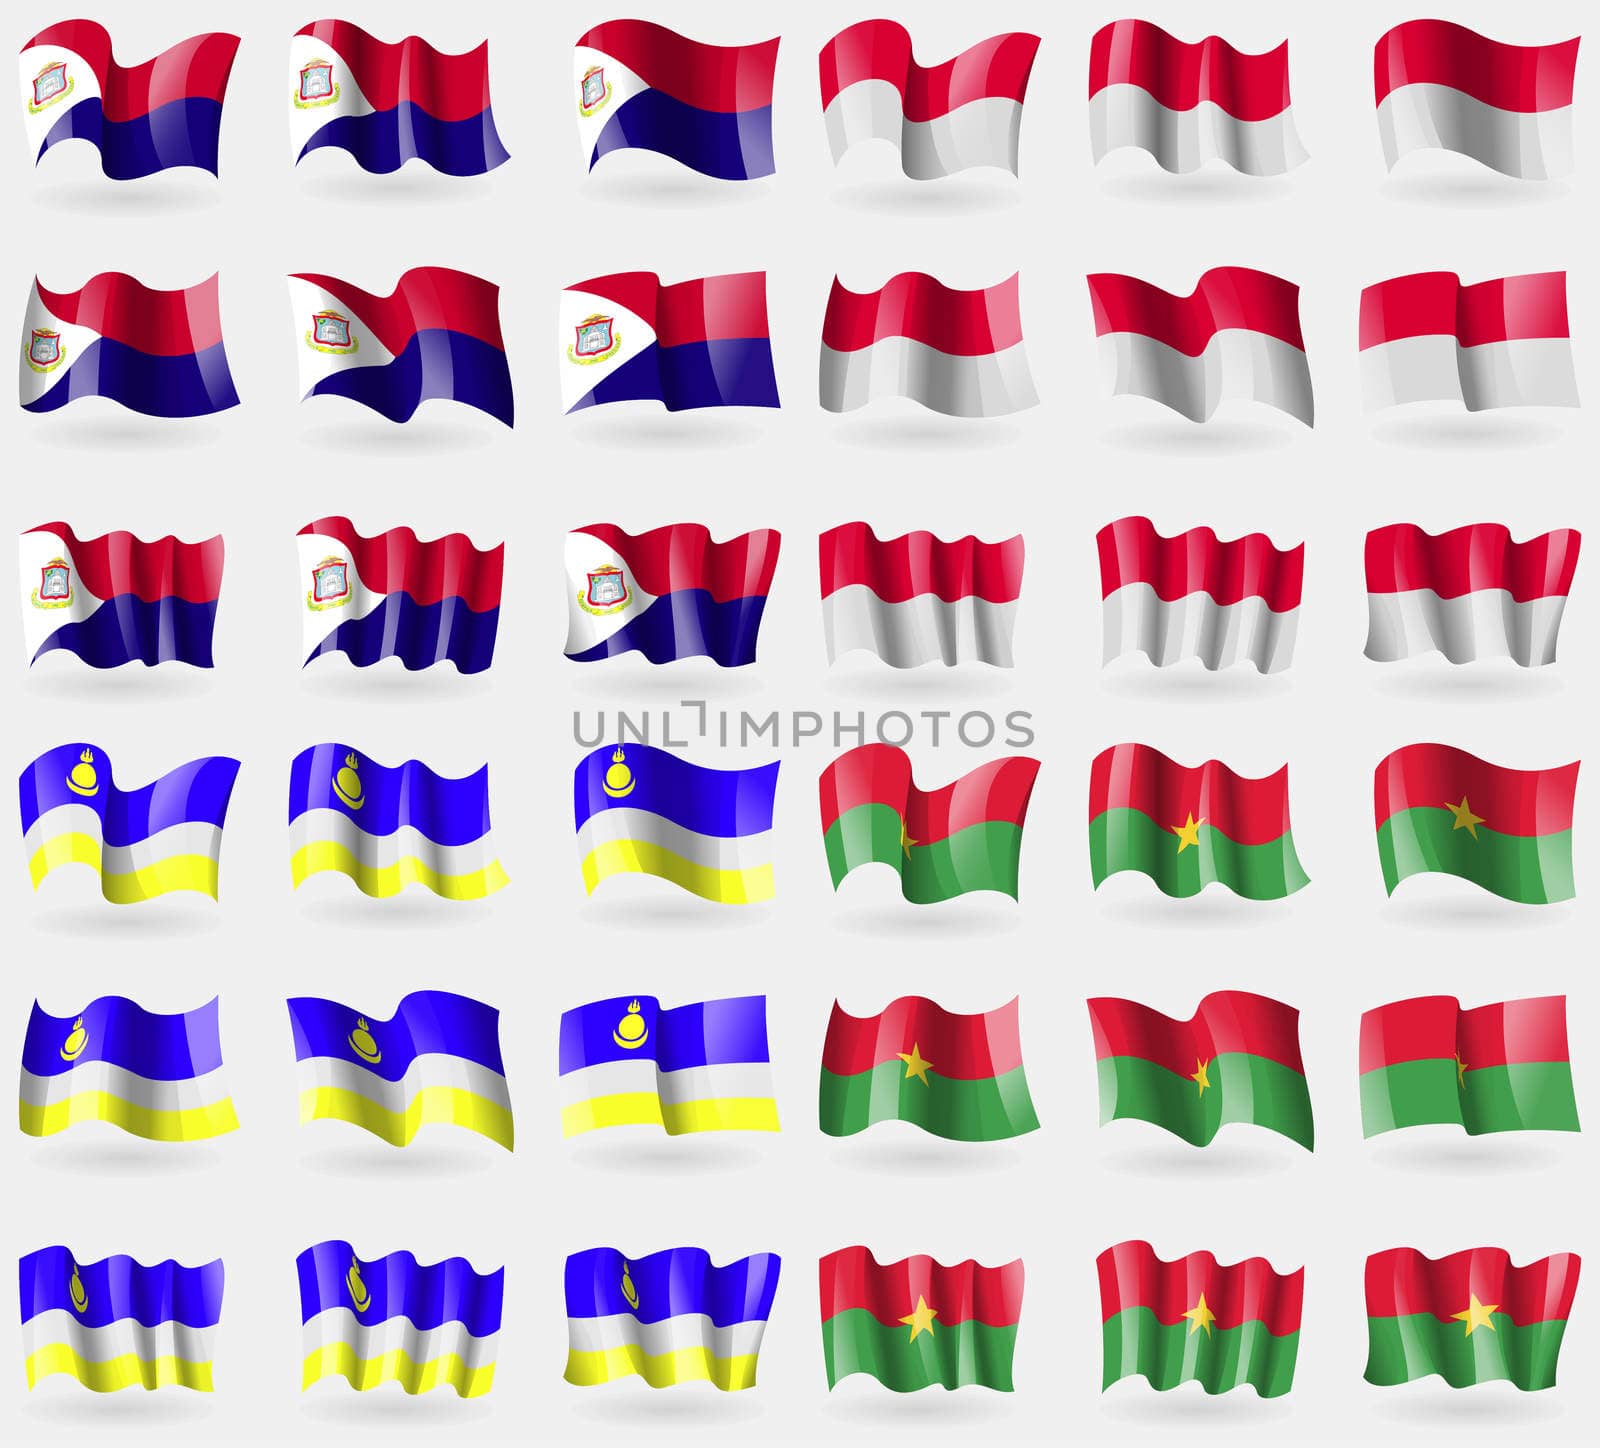 Saint Martin, Monaco, Buryatia, Burkia Faso. Set of 36 flags of the countries of the world. illustration